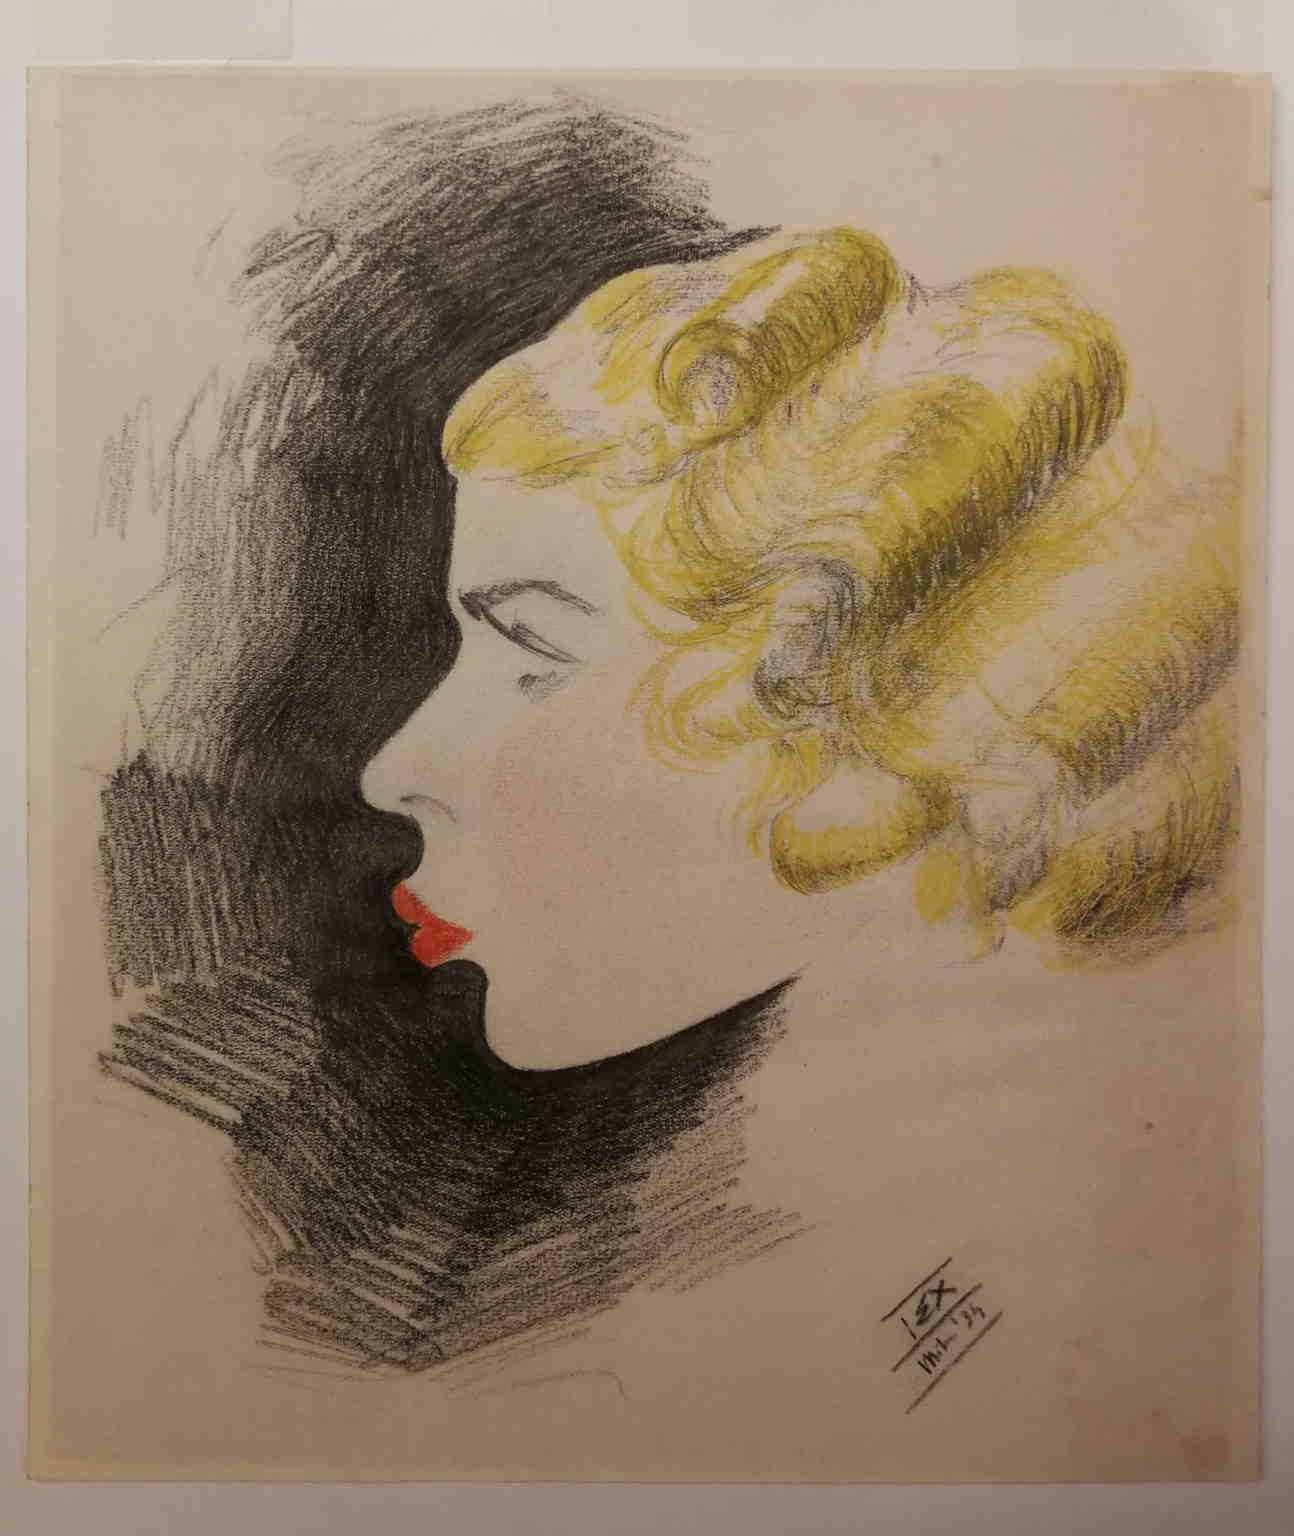 Ce dessin, crayon de couleur sur papier 26 x 23 cm sans cadre, représente une dame de profil, coiffée selon la mode typique de l'époque. D'après son portrait, elle semble être une femme audacieuse, moderne et téméraire, portant un rouge à lèvres